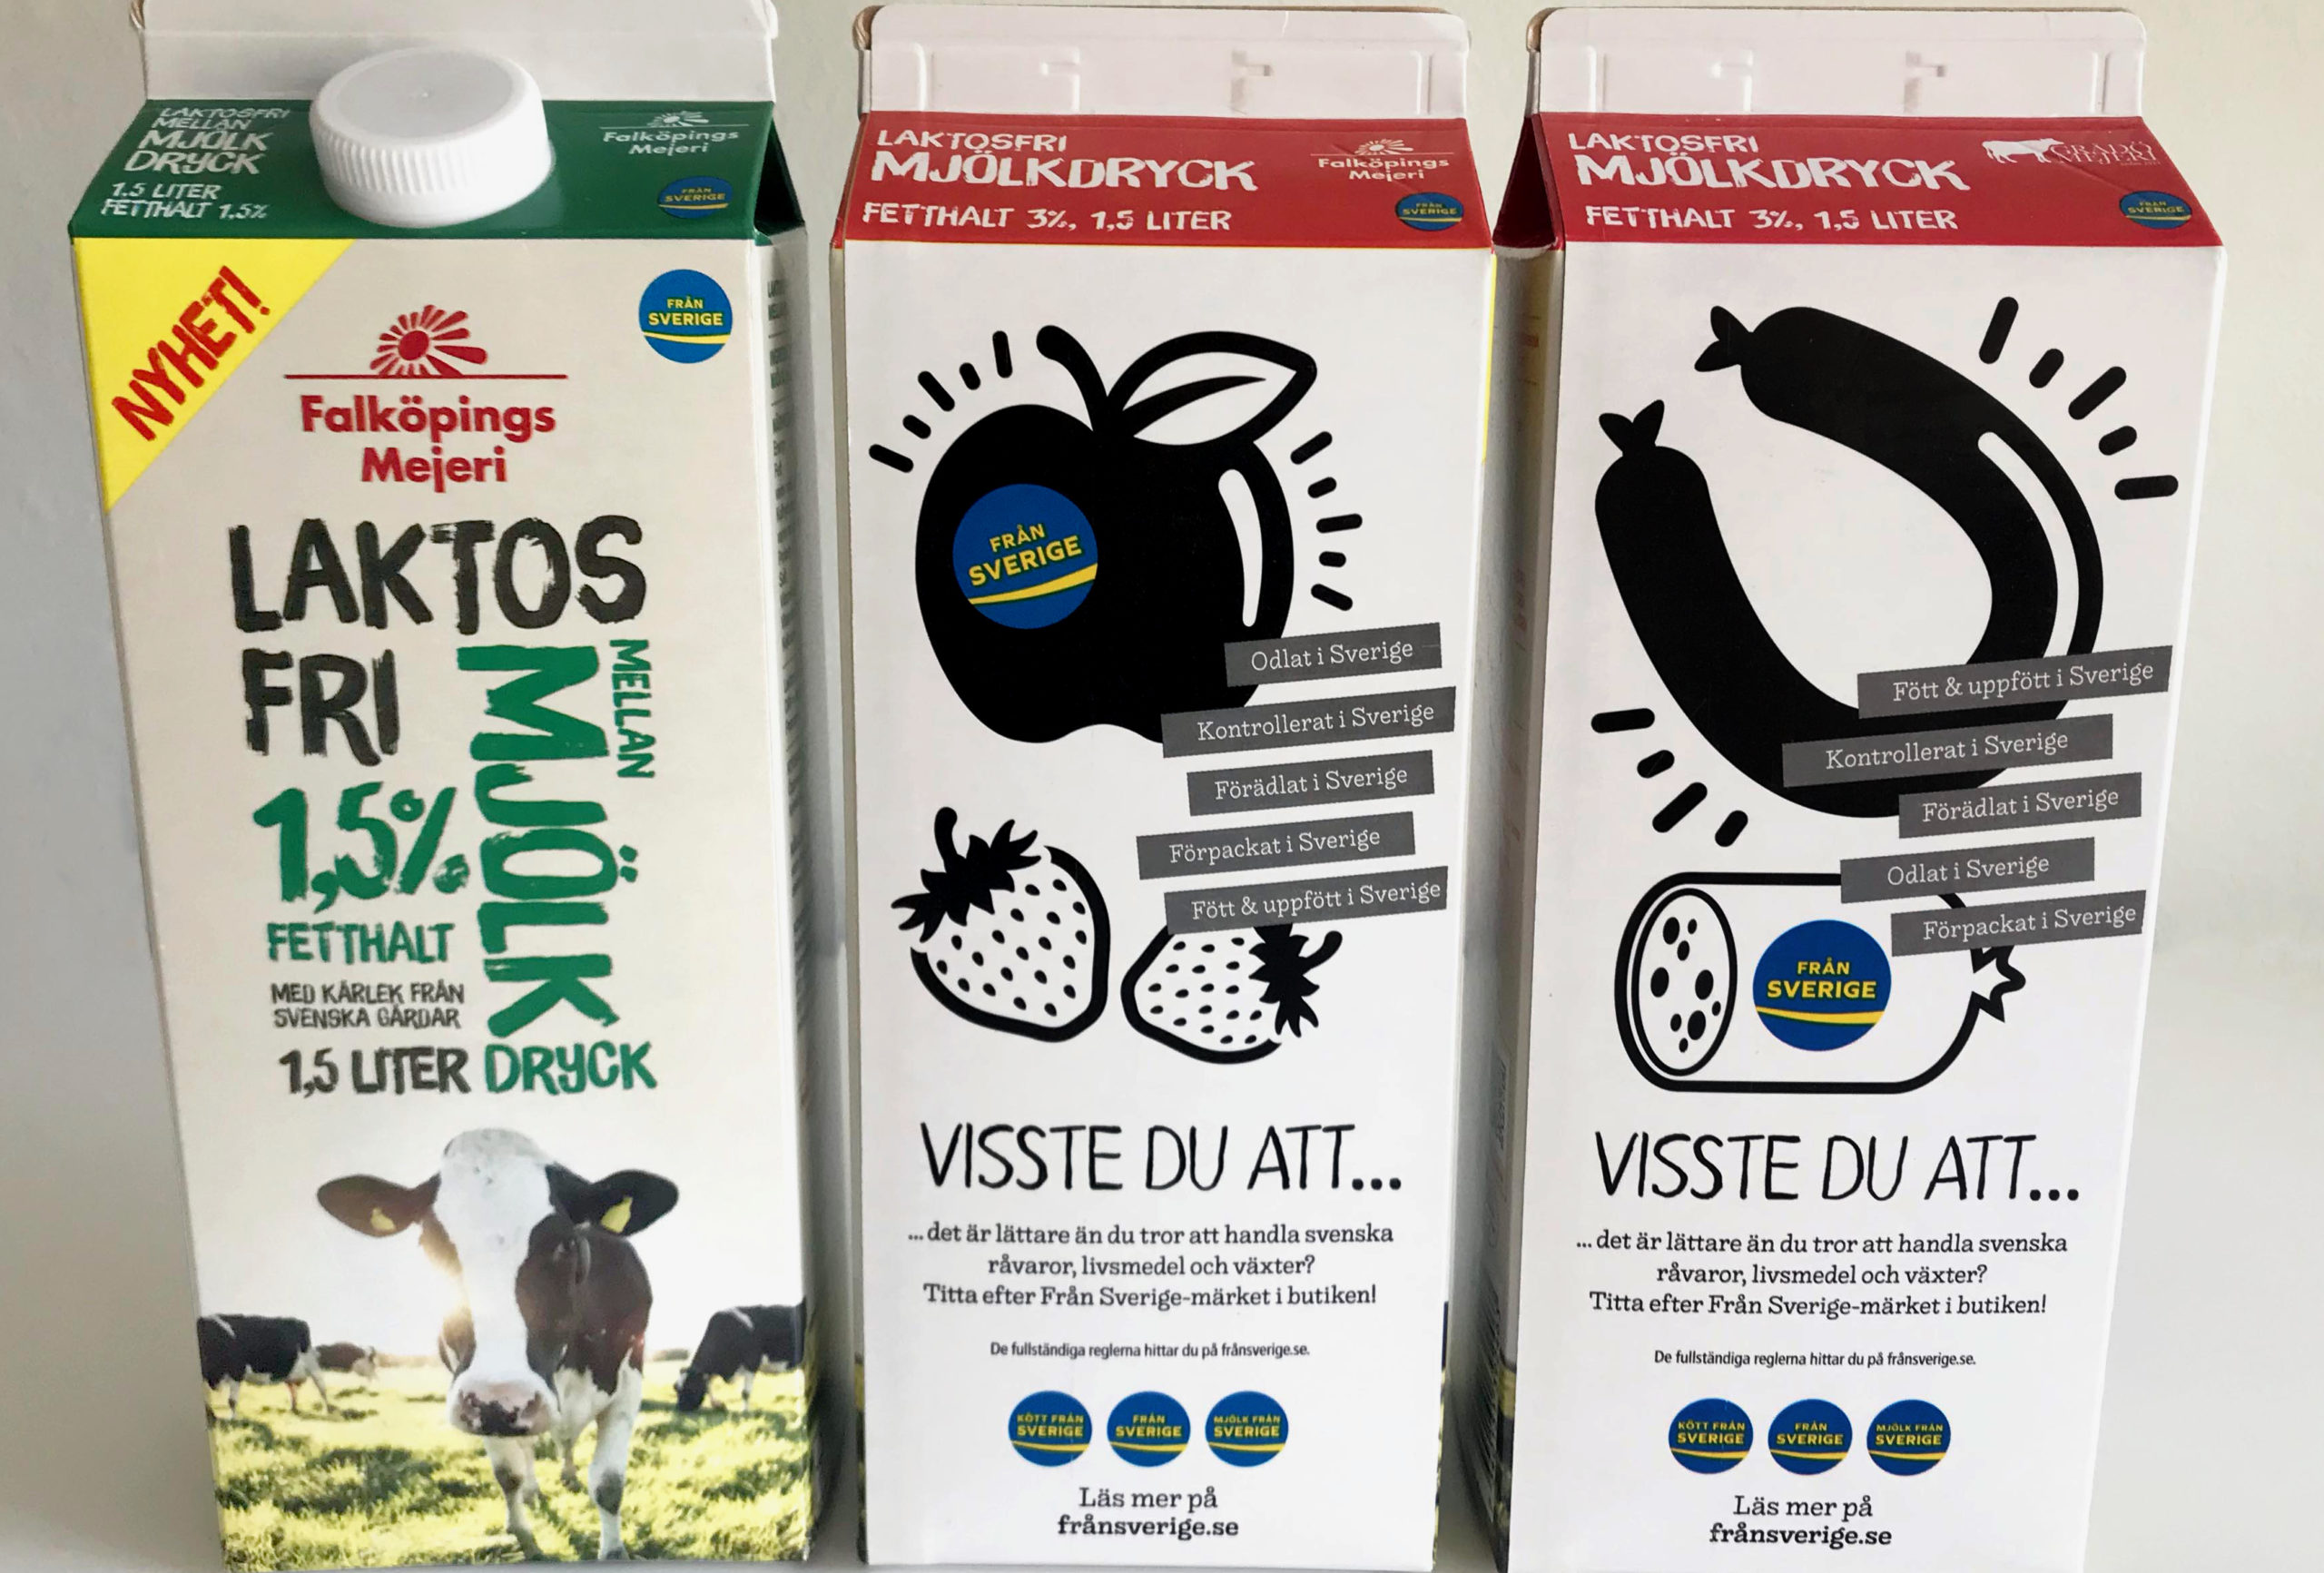 Från Sverige på Falköpings nya laktosfria mjölkdryck